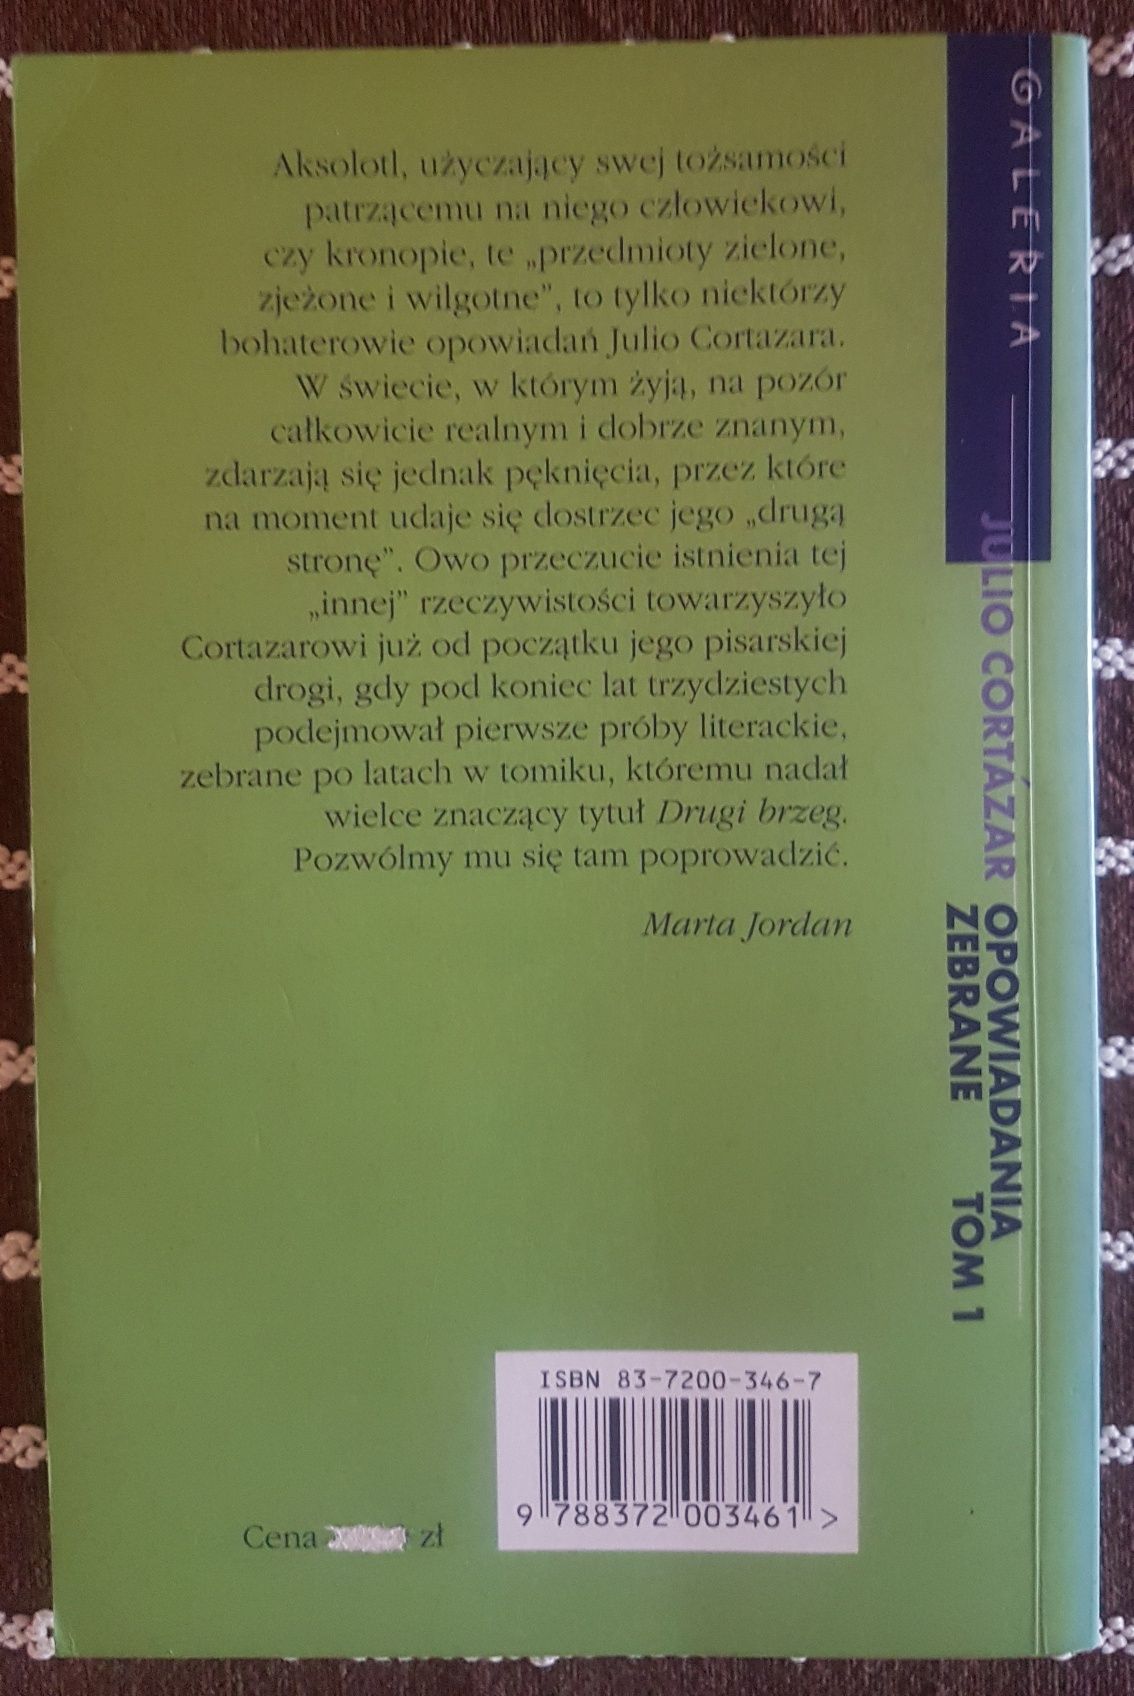 Julio Cortázar "Opowiadania zebrane" tom 1